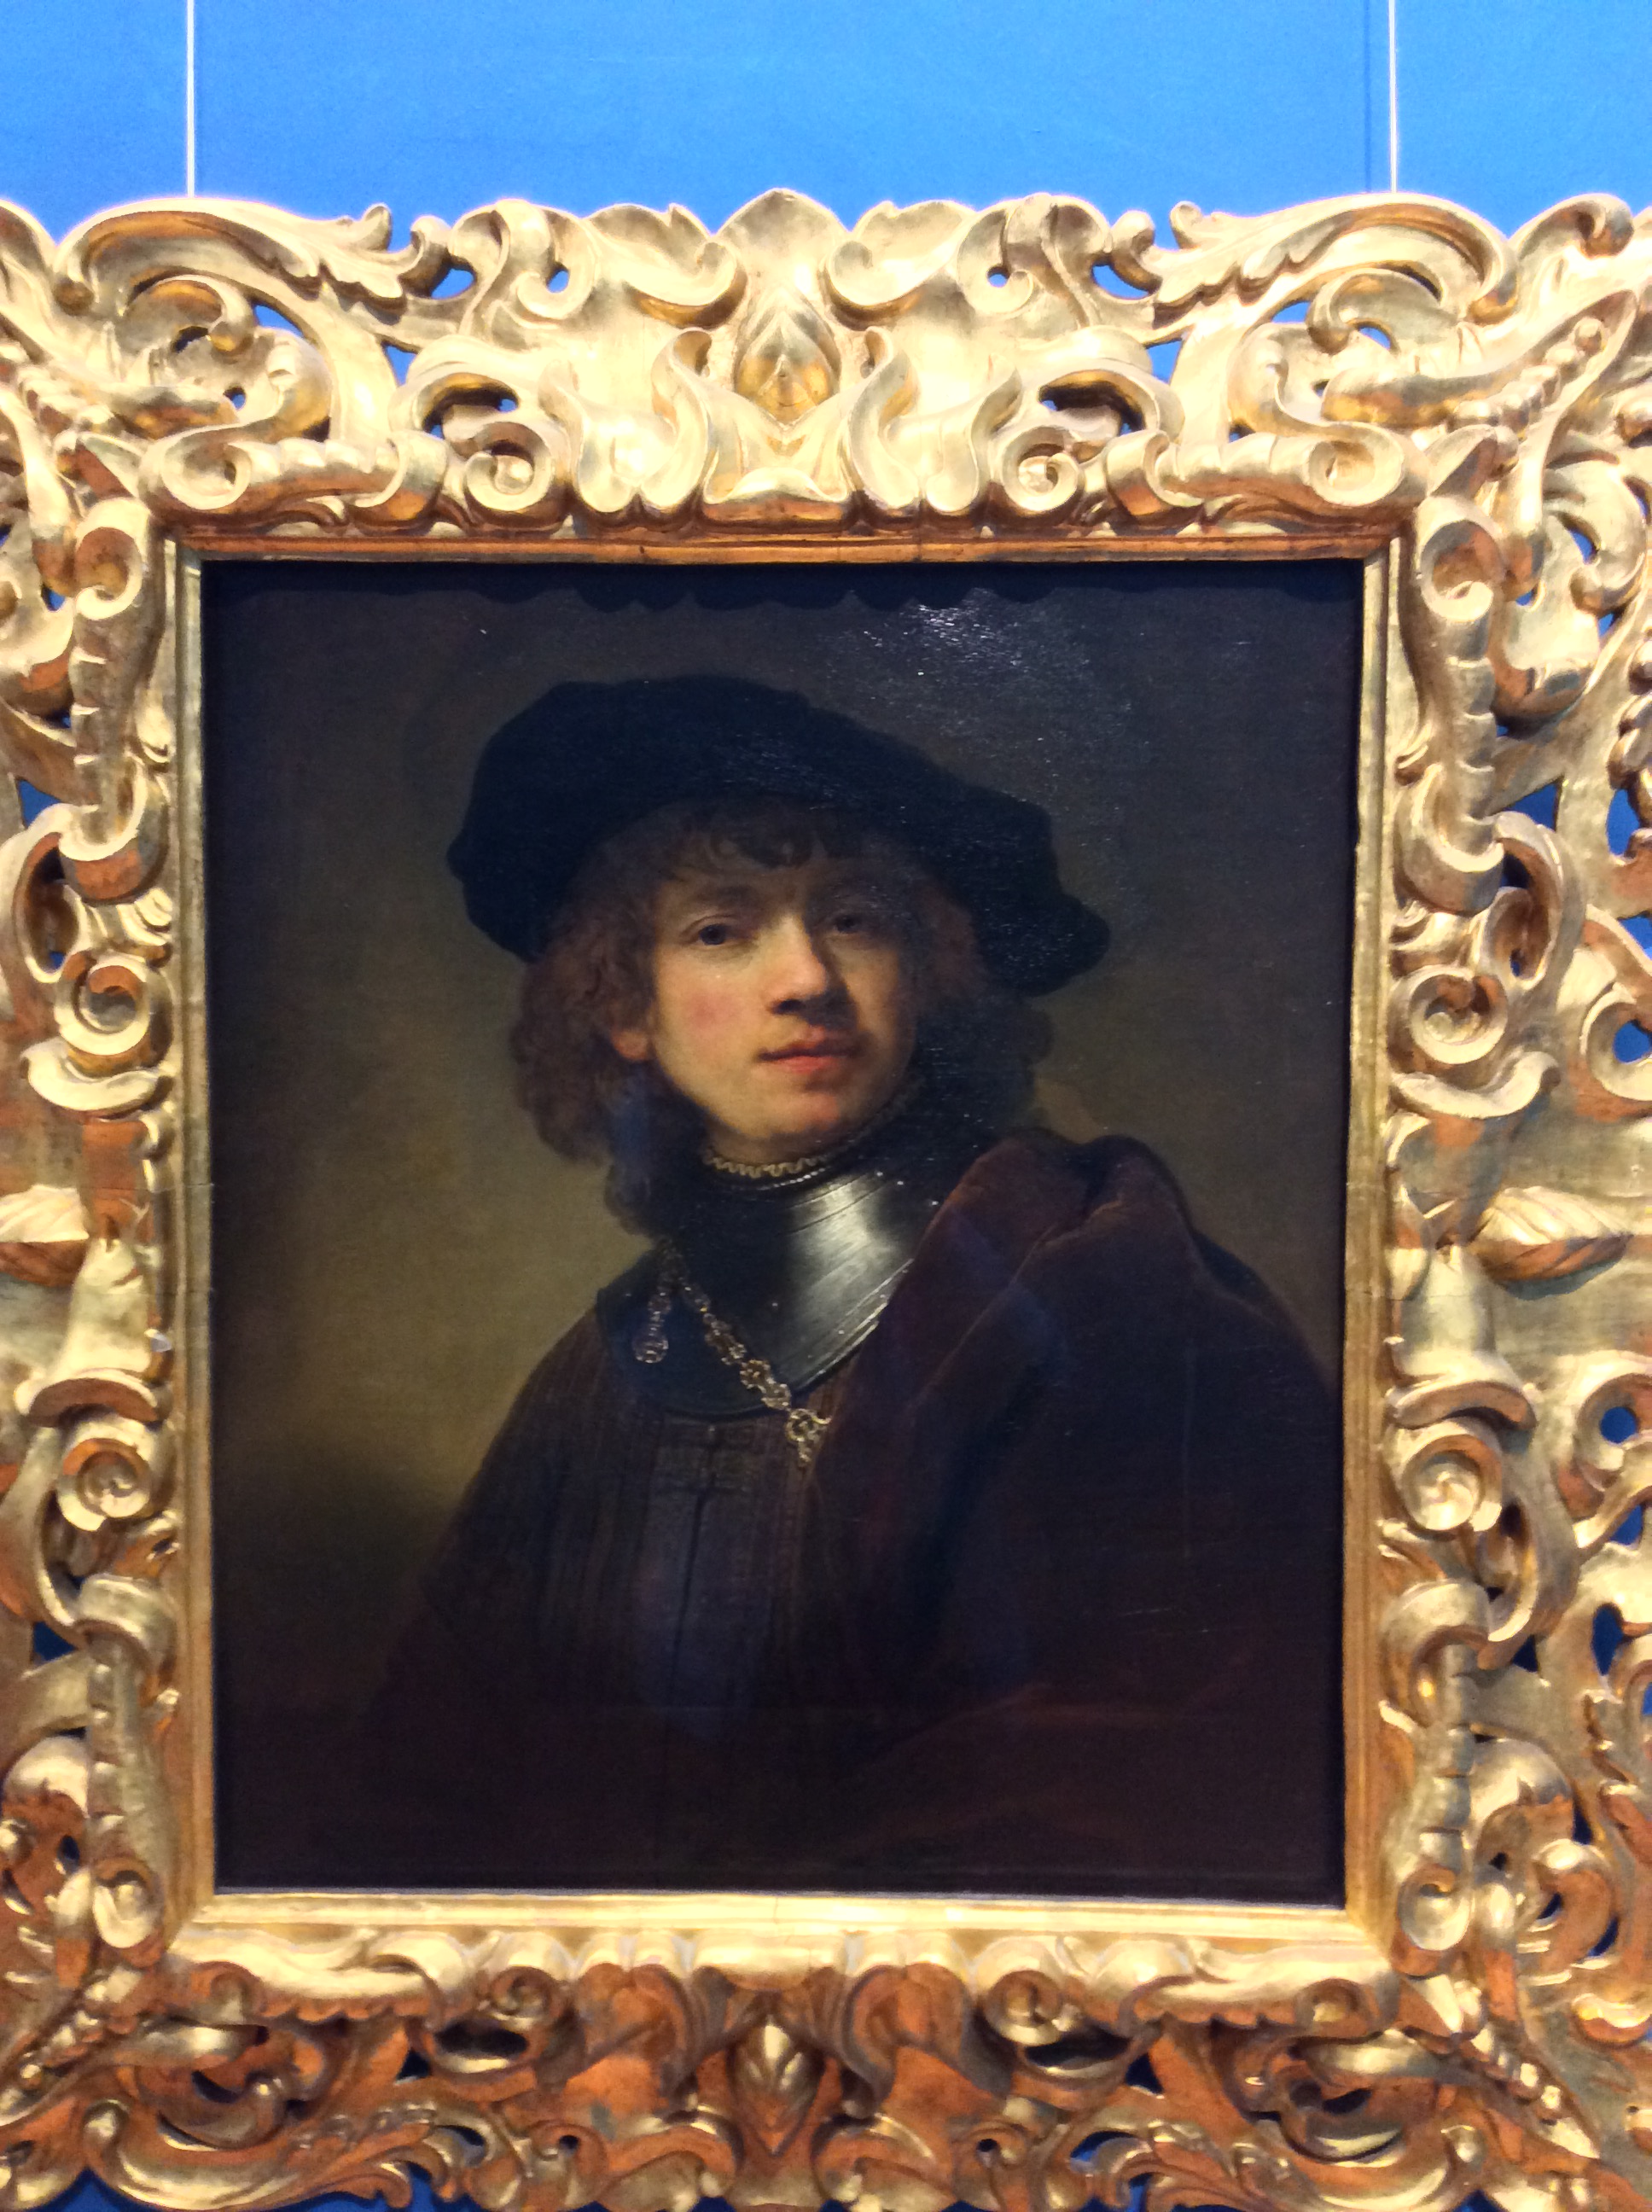 렘브란트, '자화상'1. 피렌체 우피치미술관. 아름답고 당당한 20대 청춘시기의 렘브란트입니다.